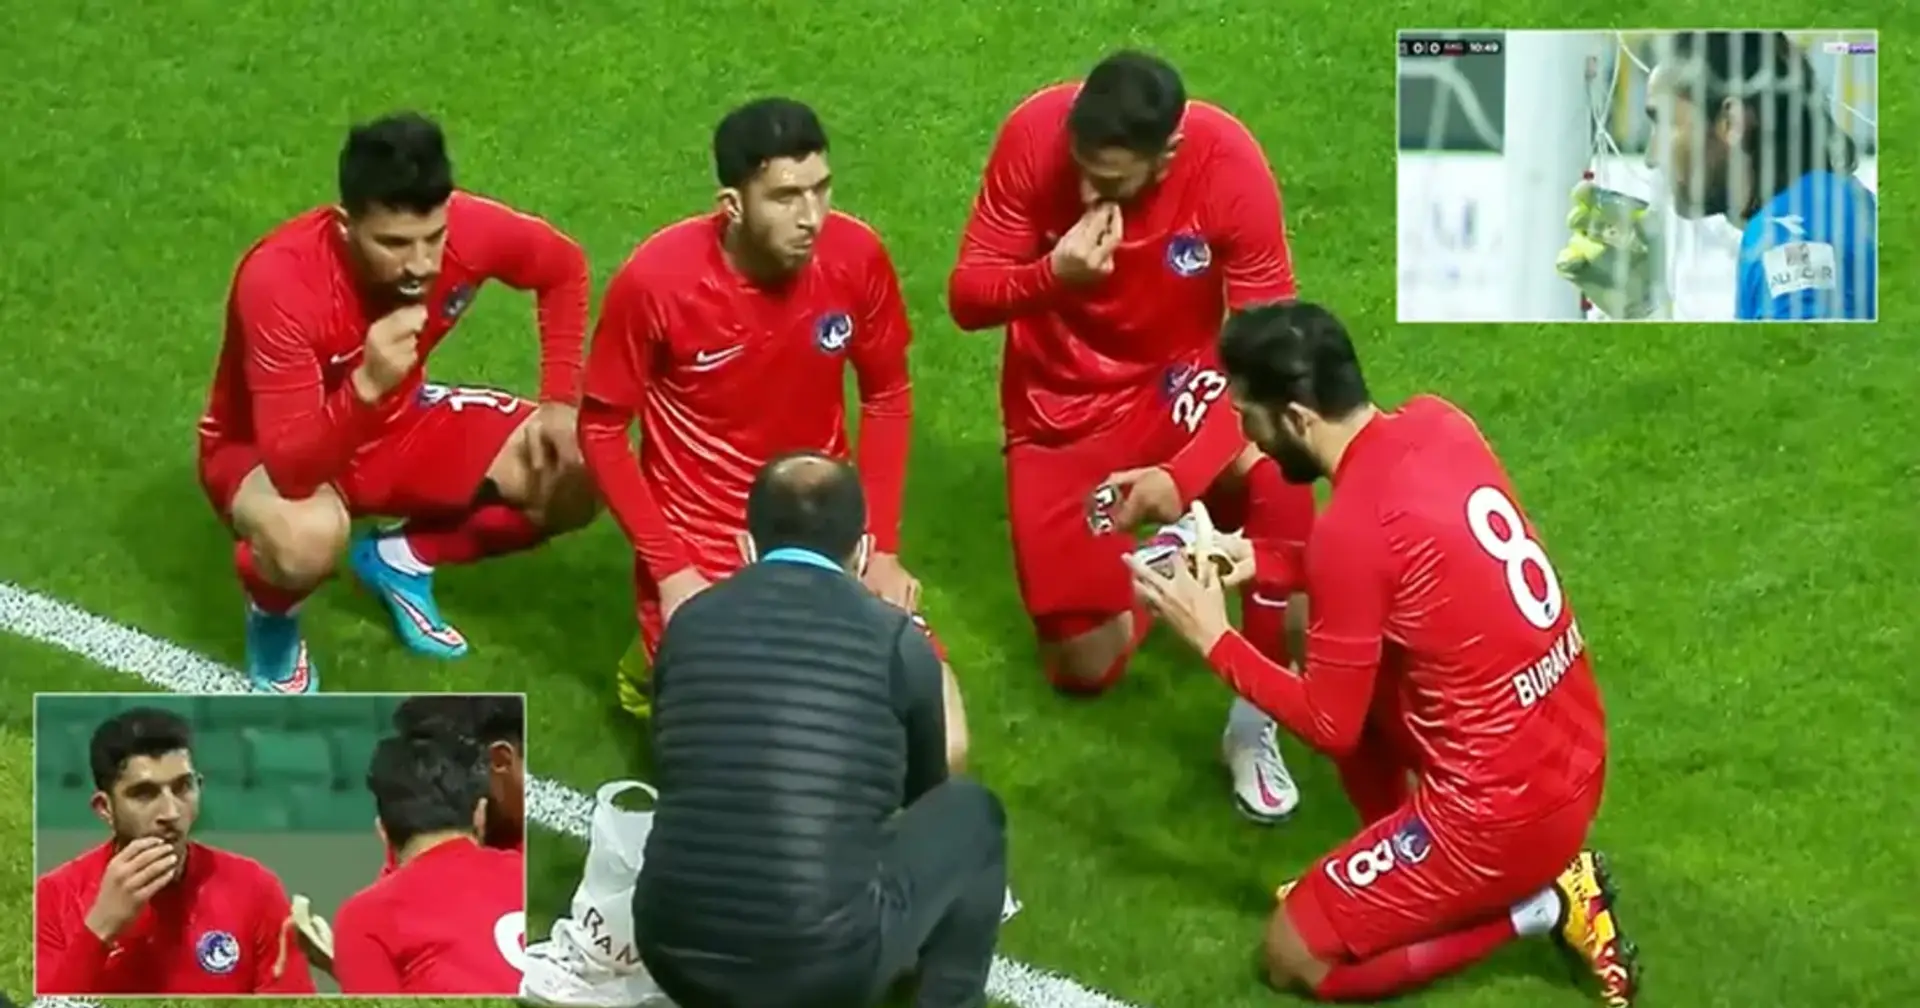 El partido de fútbol en Turquía se detuvo para que los jugadores pudieran hacer su ayuno de Ramadán - video se vuelve viral